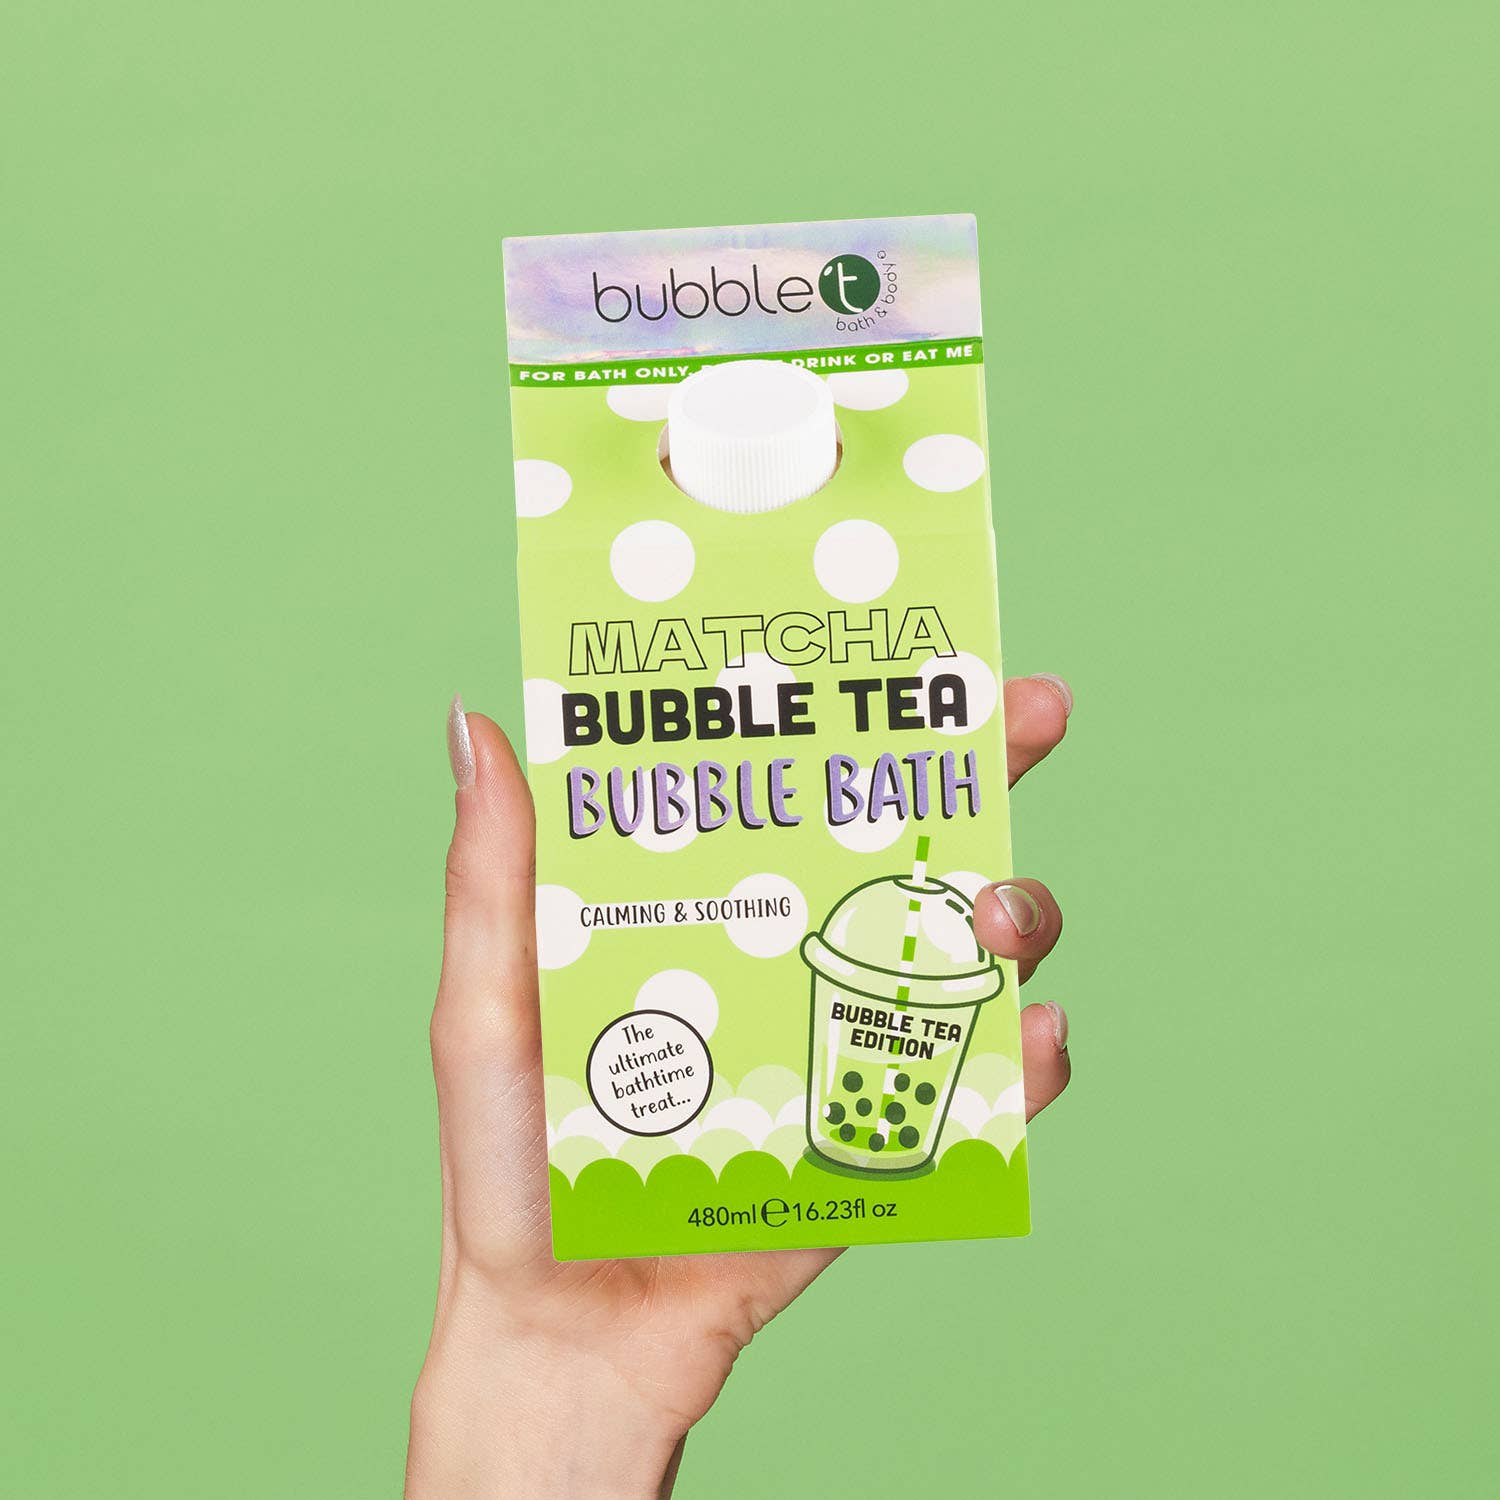 Bubble Tea Matcha Bubble Bath (480ml) - Time's Reel